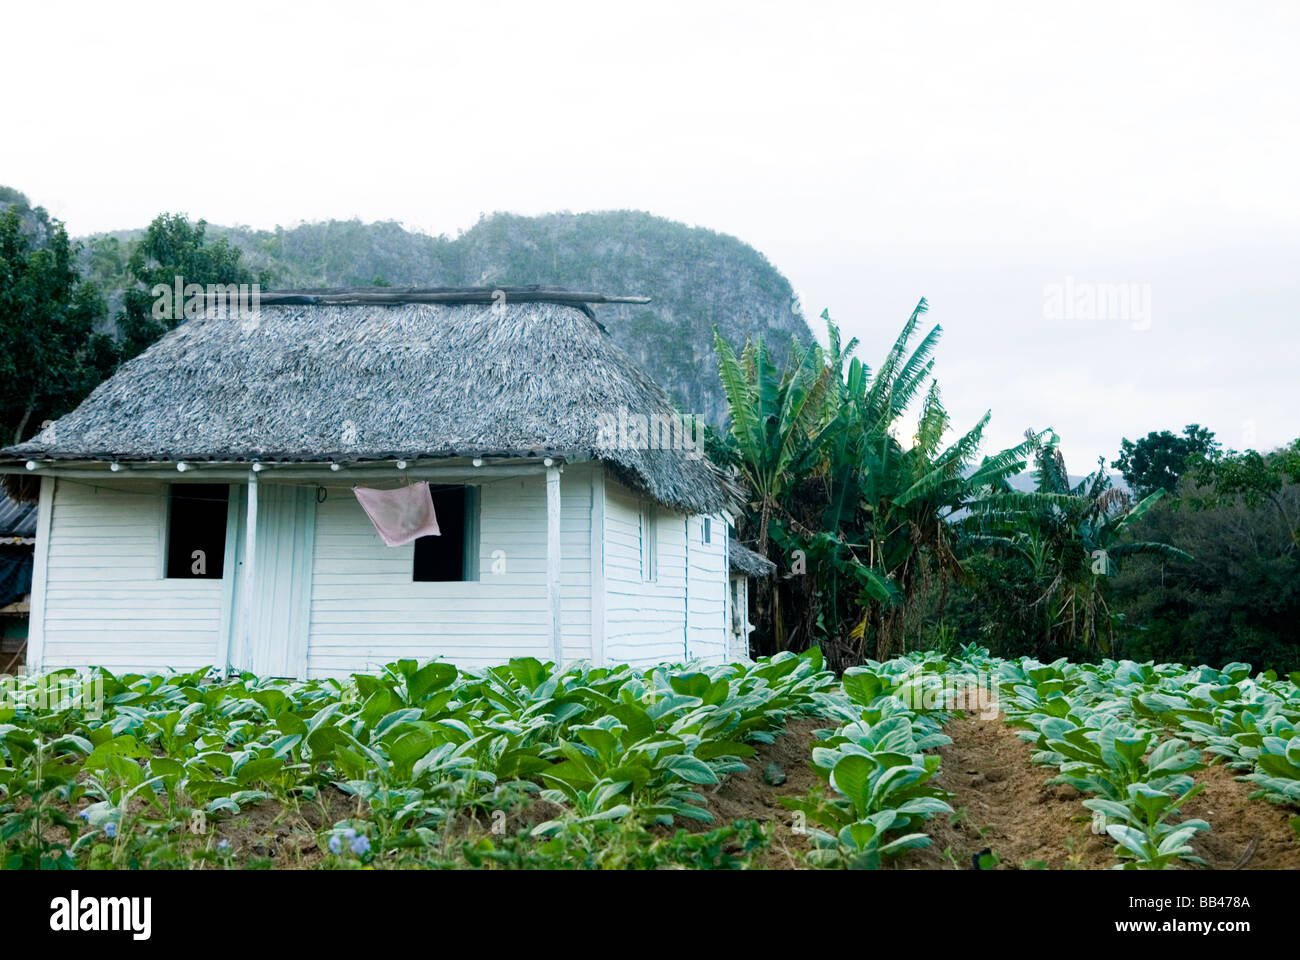 Ein kleines Haus, umgeben von jungen Tabakpflanzen sitzt unterhalb Kalksteinhügel in tropischen ländlicher Umgebung, Vinales, Kuba. Stockfoto